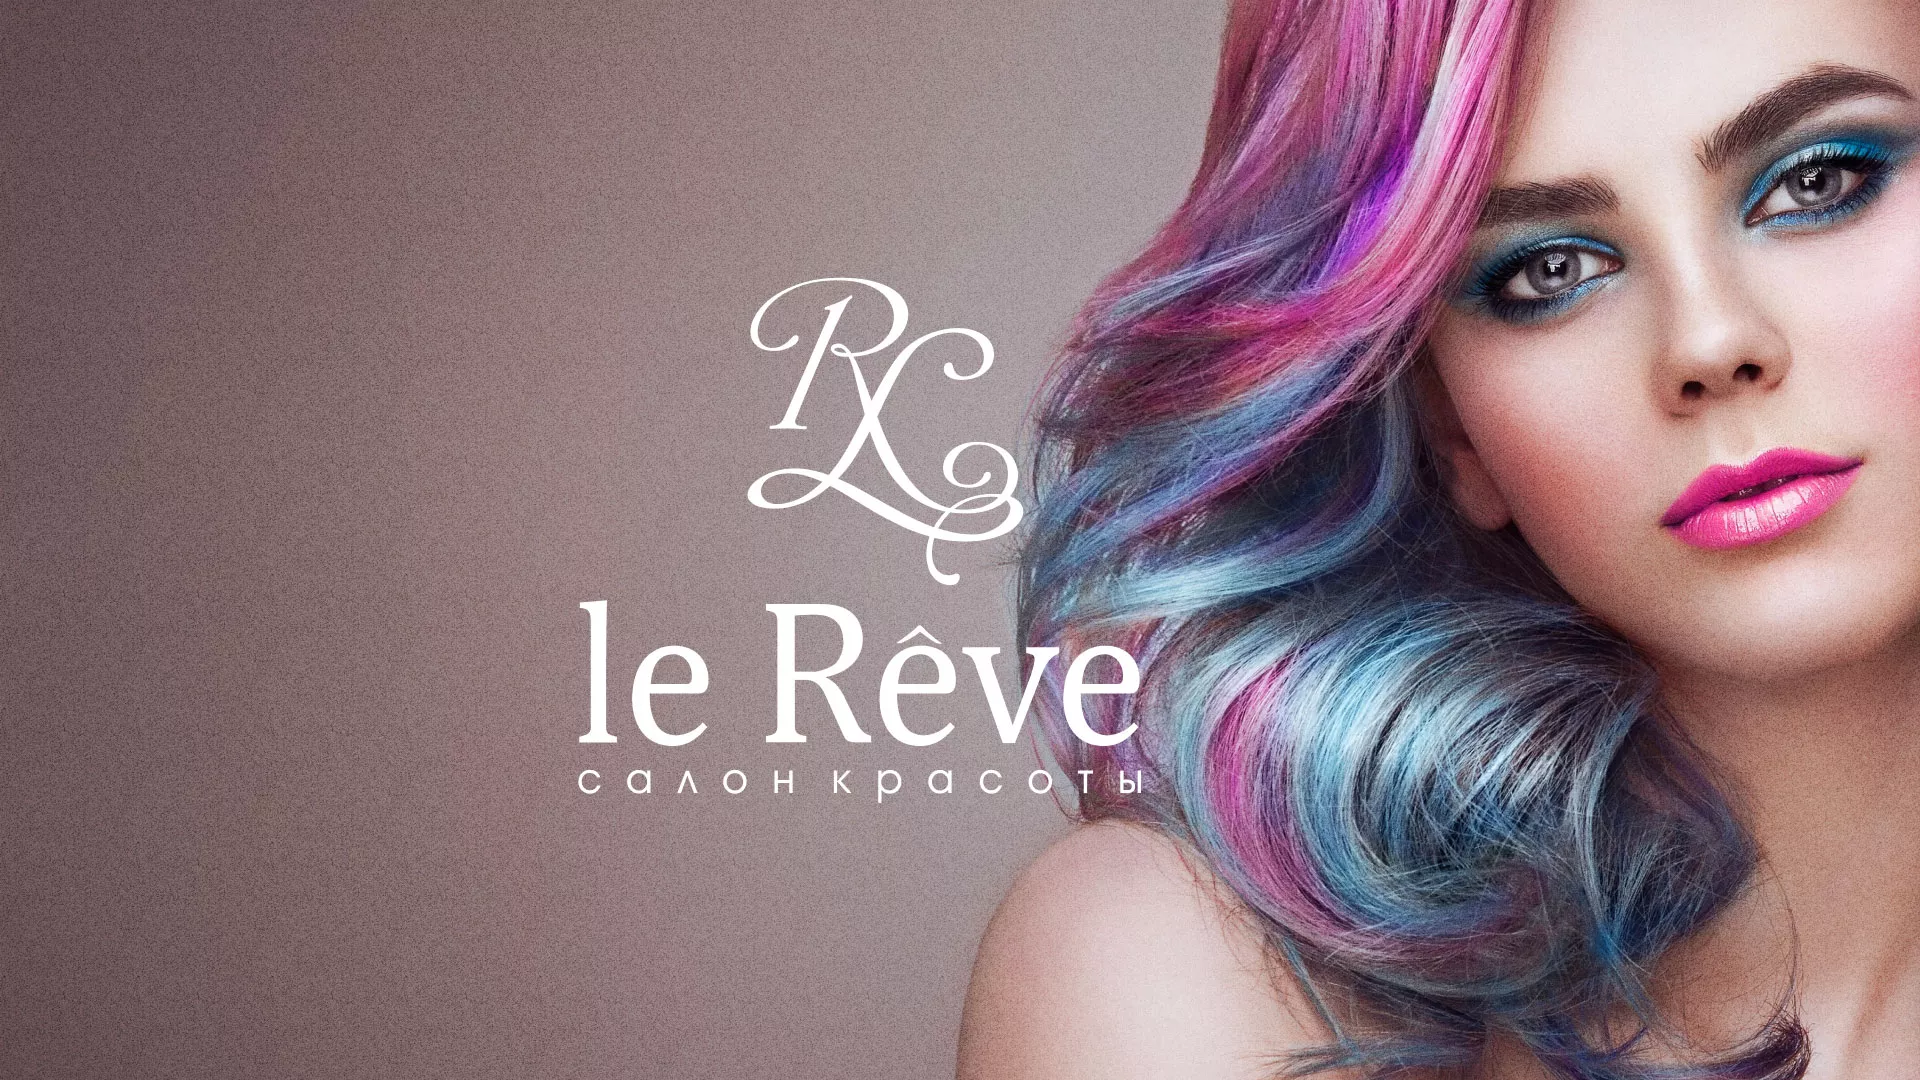 Создание сайта для салона красоты «Le Reve» в Ясном